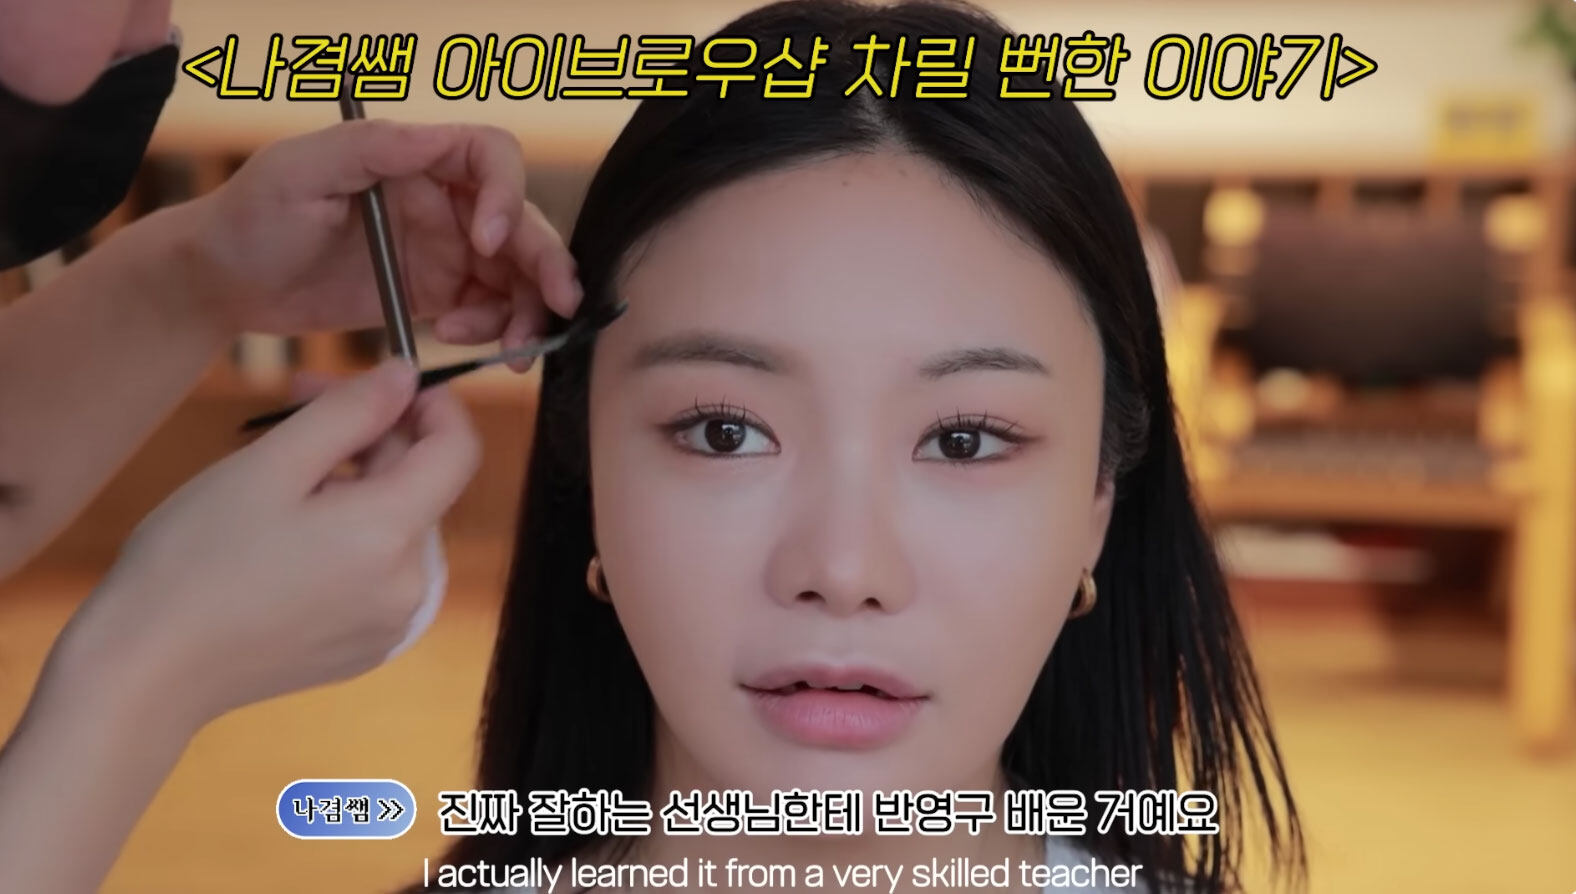 韓國女團妝｜NewJeans御用化妝師親授韓國女團妝容！顛覆性化妝解析 從底妝到眼妝的實用技巧